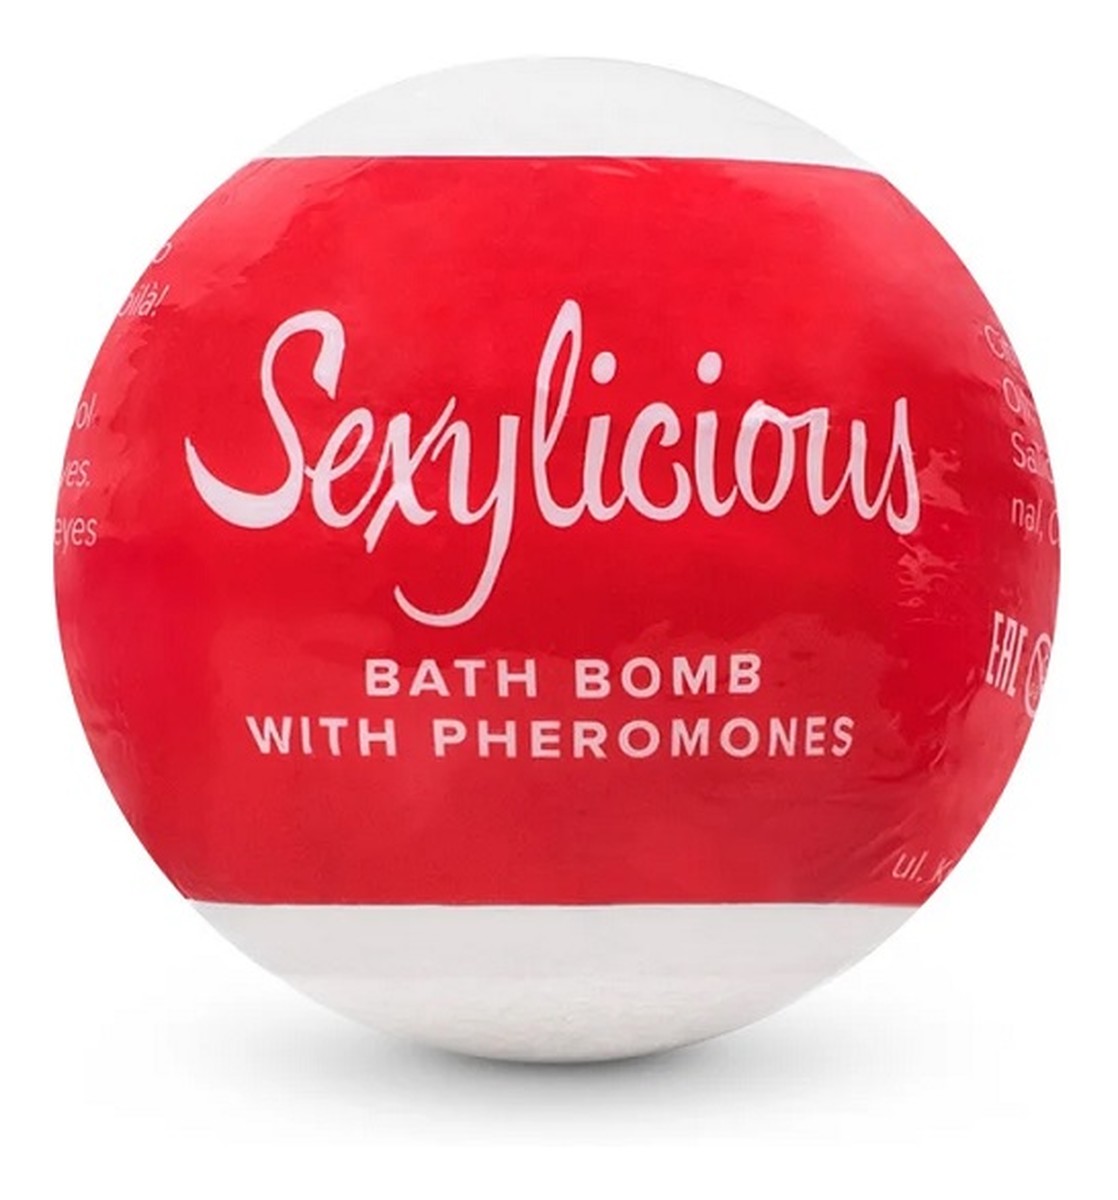 Bath Bomb kula do kąpieli z feromonami Sexylicious